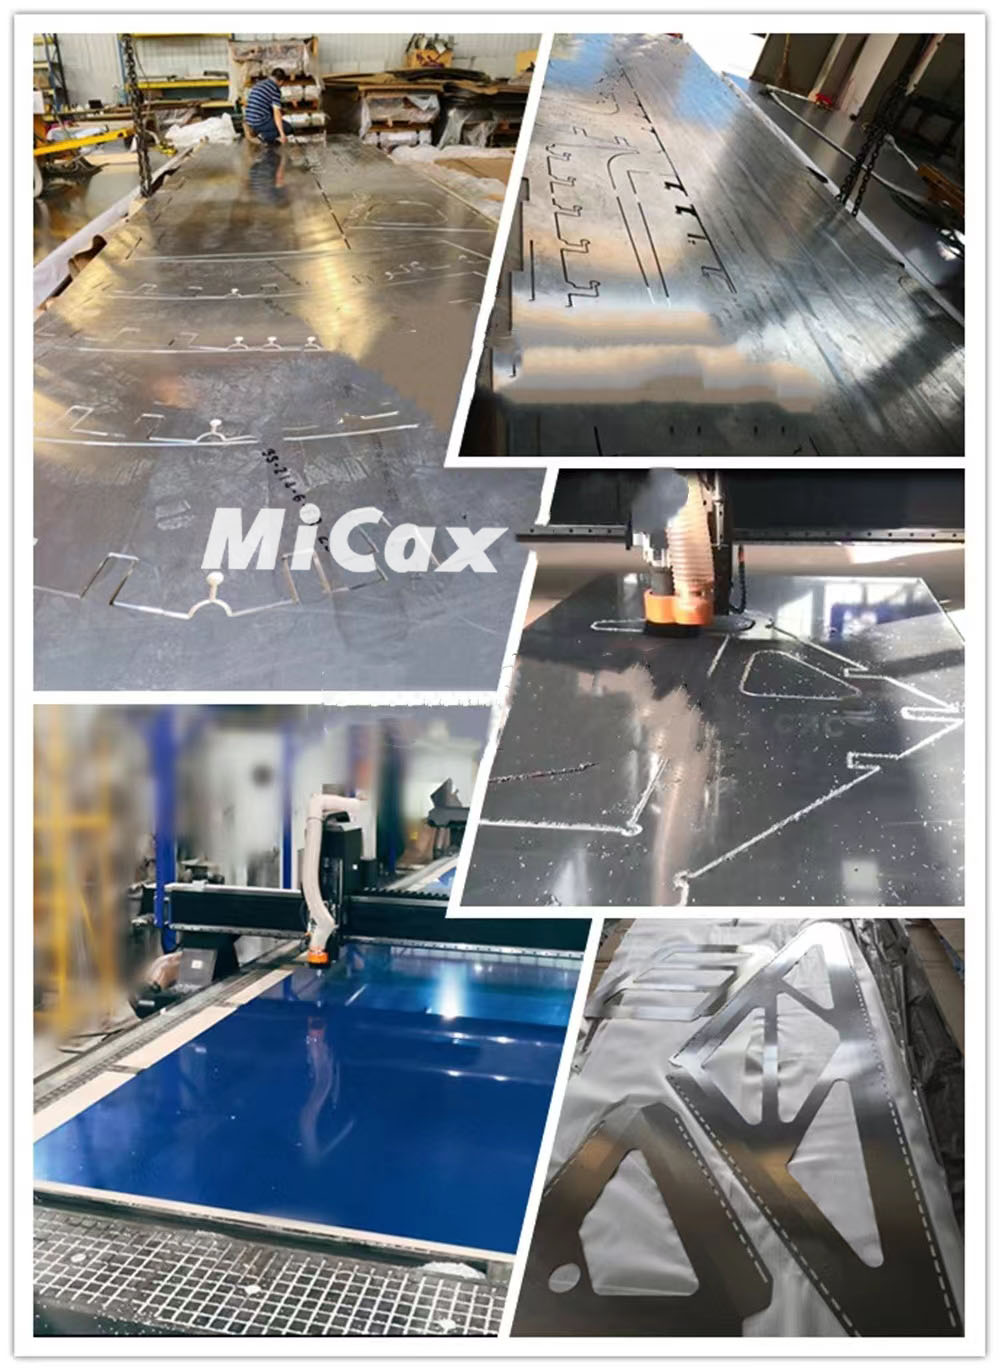 MiCax aluminium-magnesium CNC router for lightweight marine upgrades